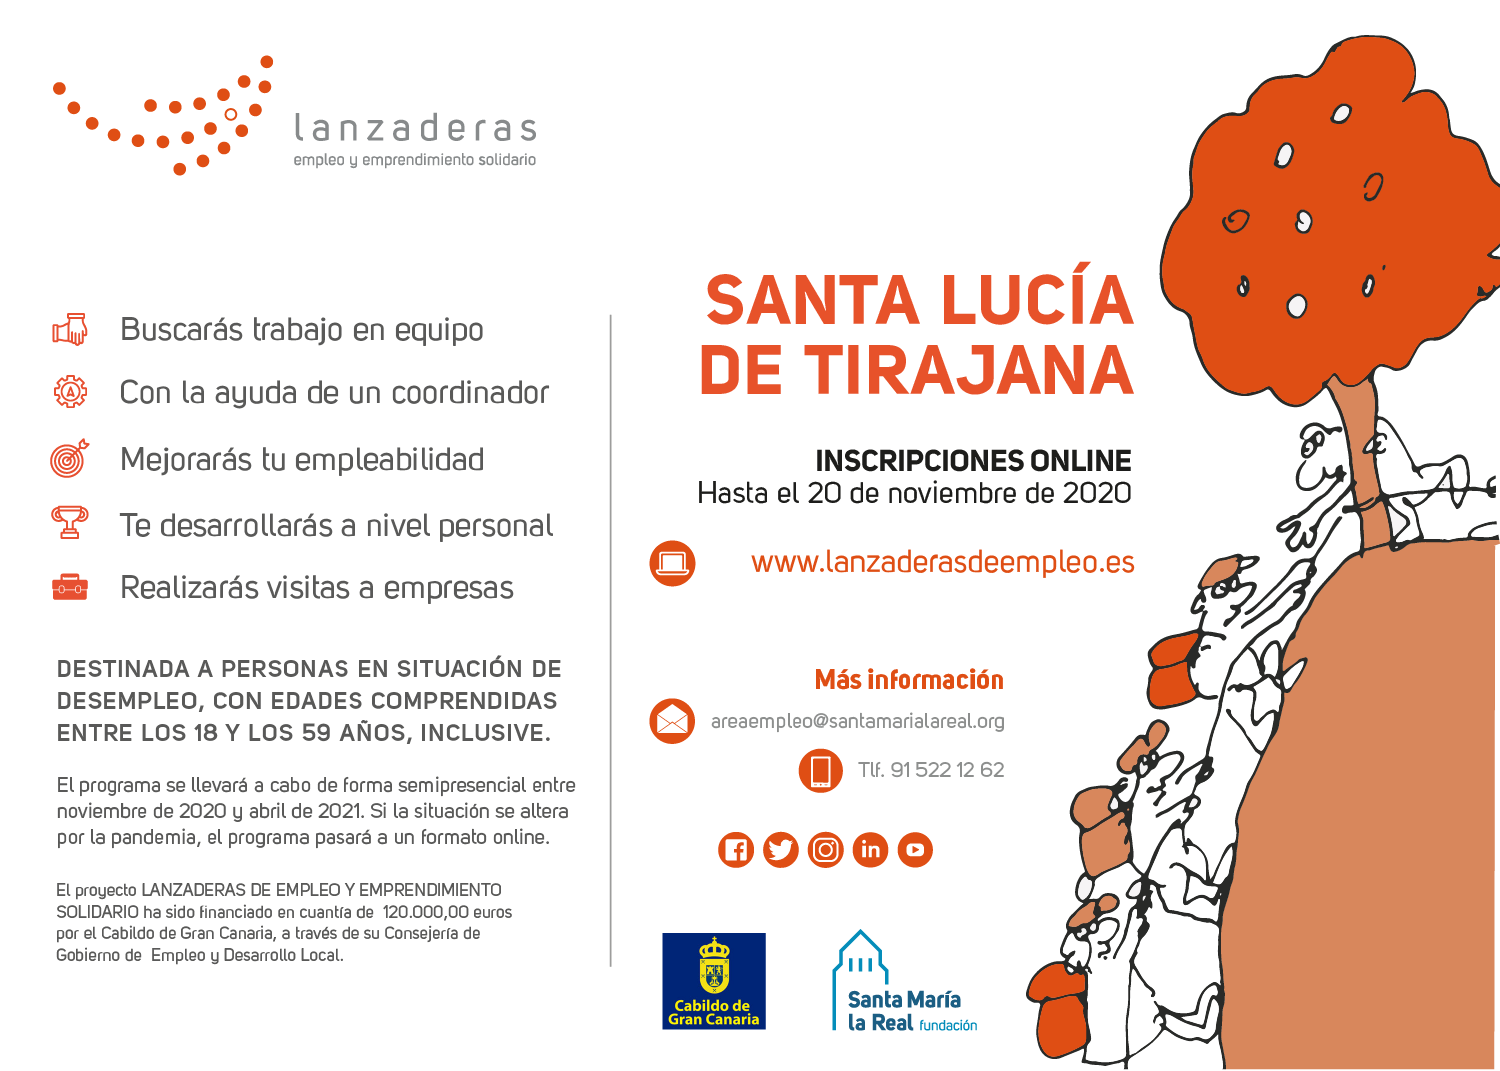 El Ayuntamiento de Santa Lucía se suma al nuevo proyecto de Lanzaderas de empleo que promueve el Cabildo a partir de noviembre